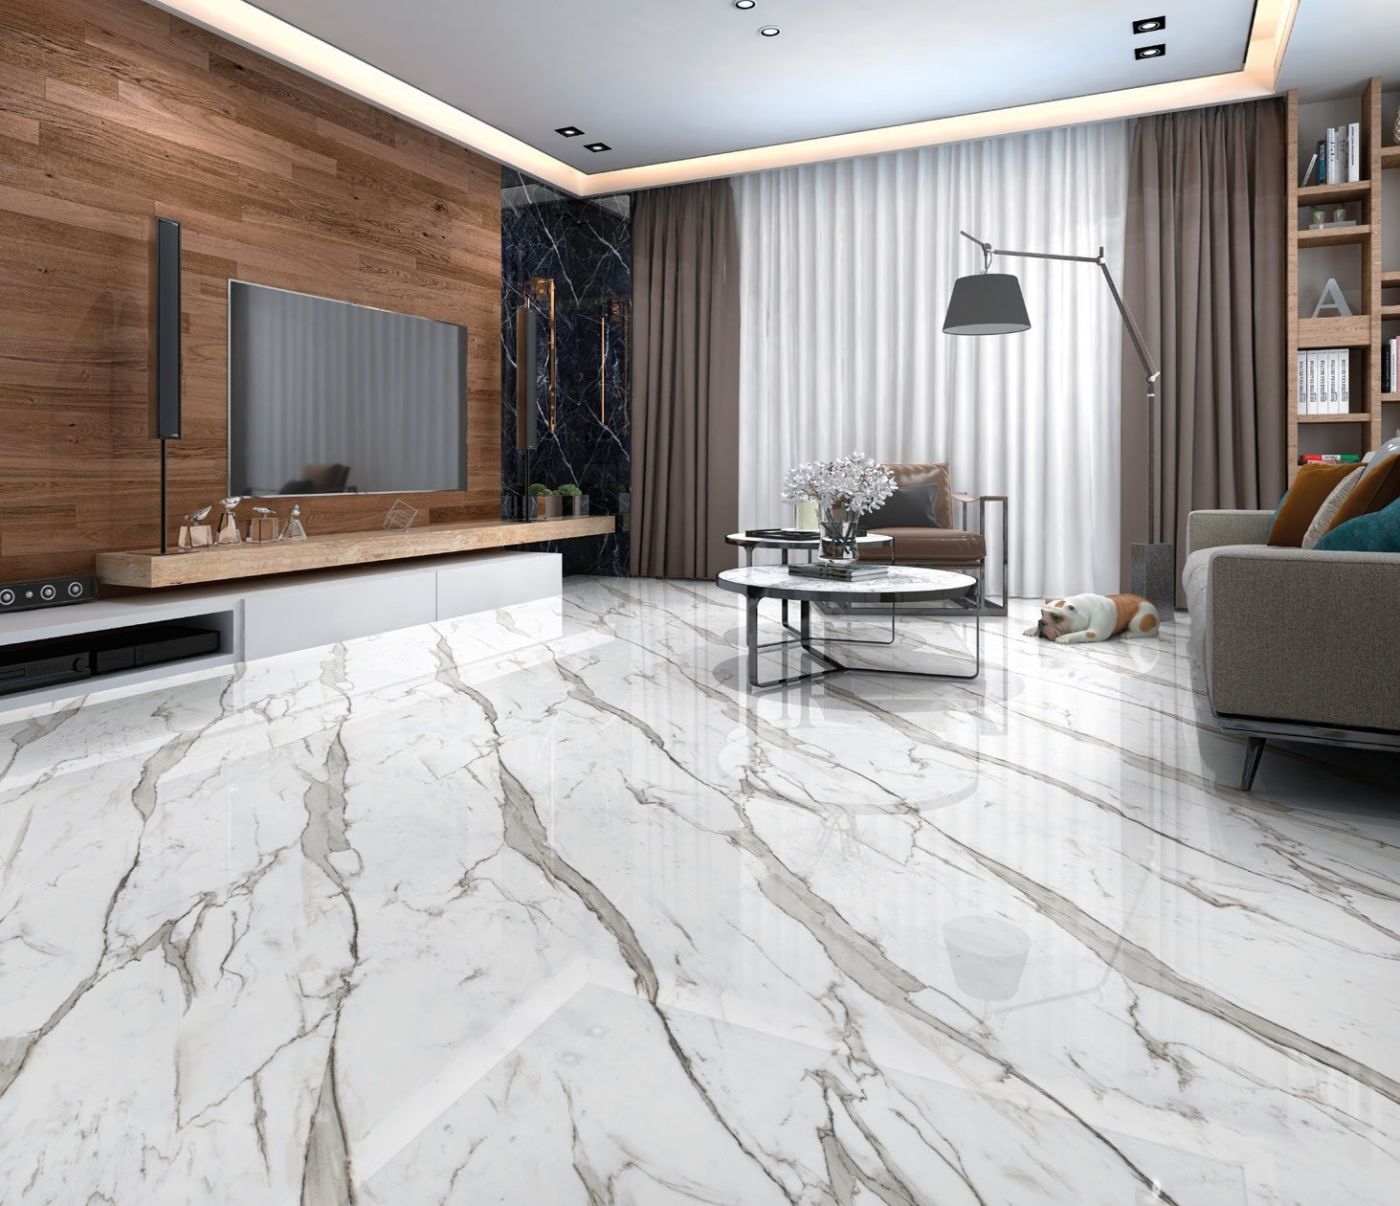 Gres effetto marmo lucido con VENA CONTINUA - Effetto marmo, levigati e  opachi - Gres Porcellanato - Prodotti - Ceramiche Artistiche Bertolani SRL